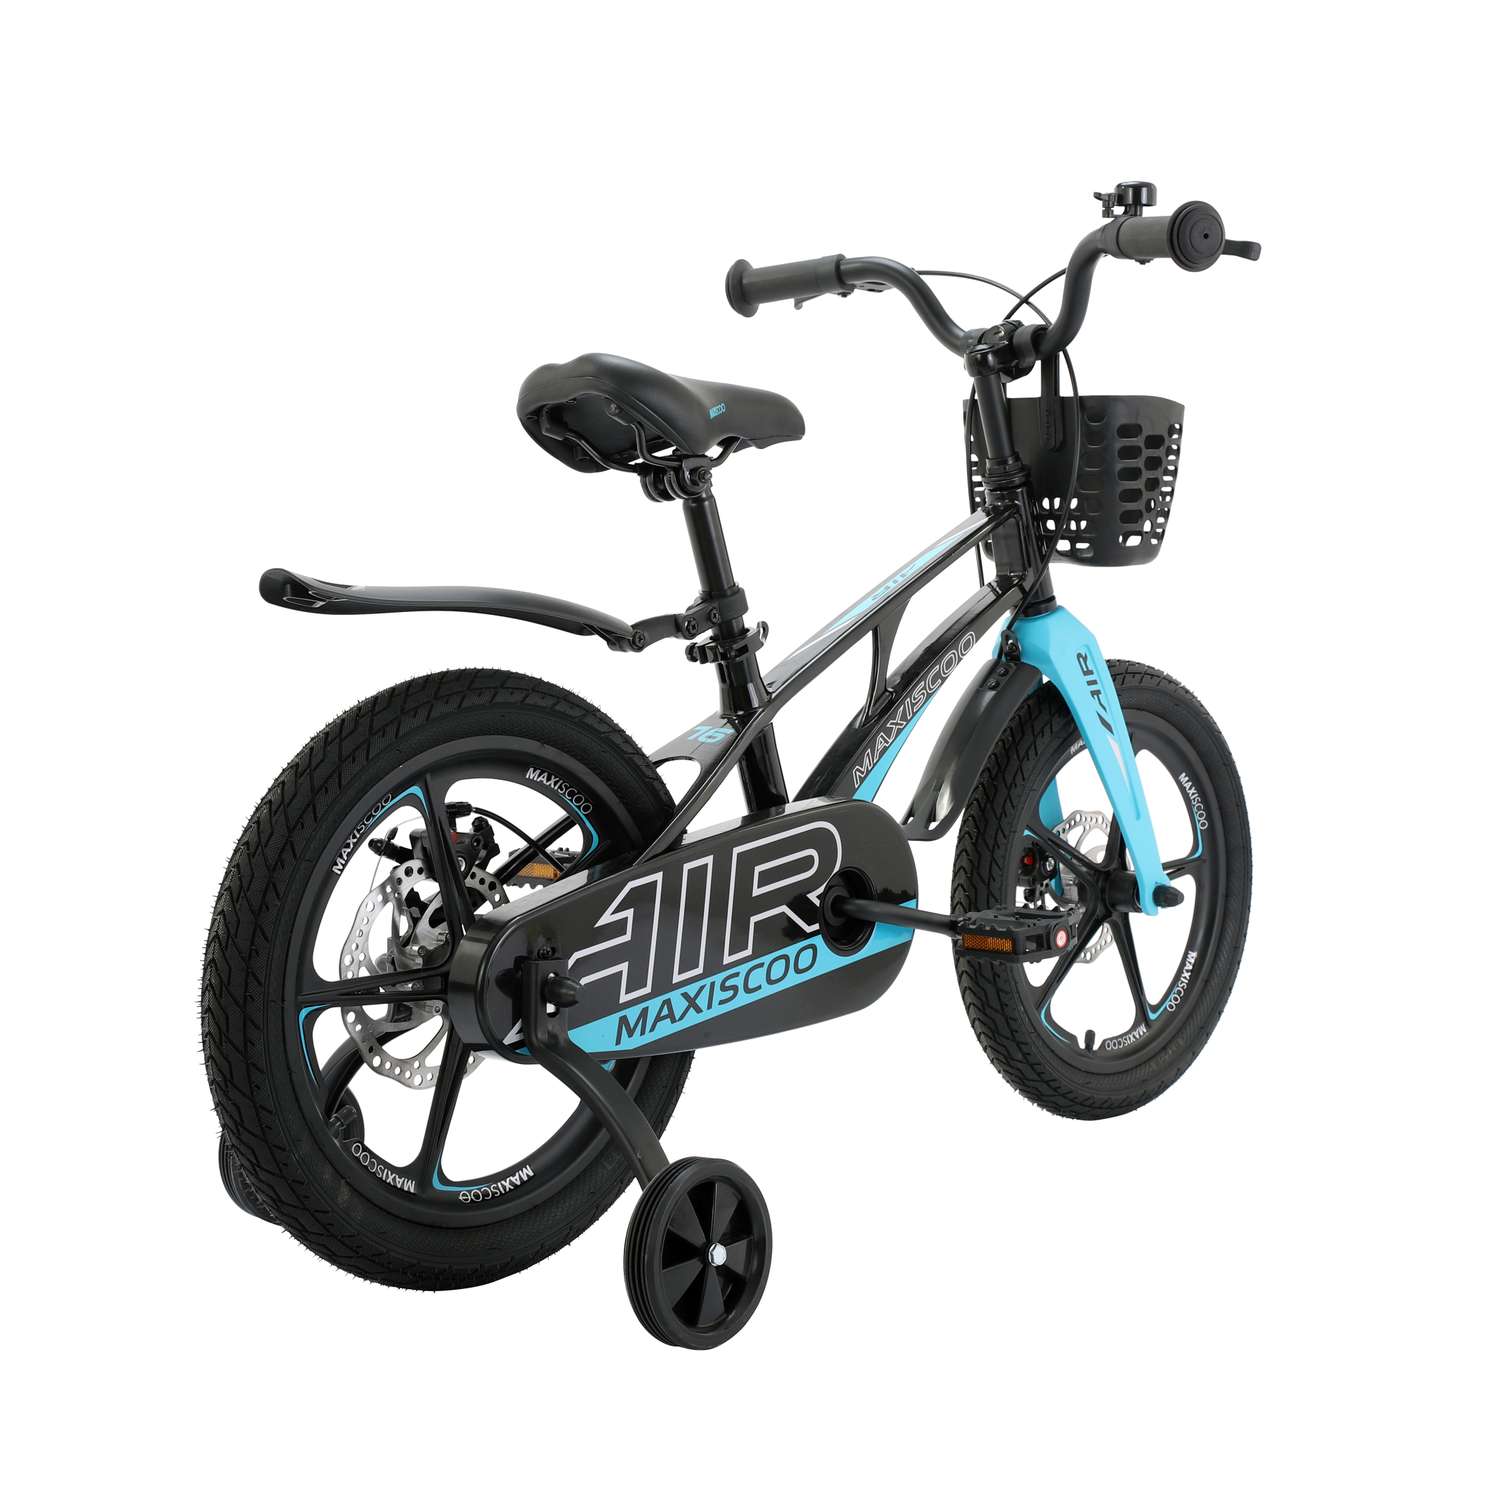 Детский двухколесный велосипед Maxiscoo Airделюкс плюс 16 черный аметист - фото 3